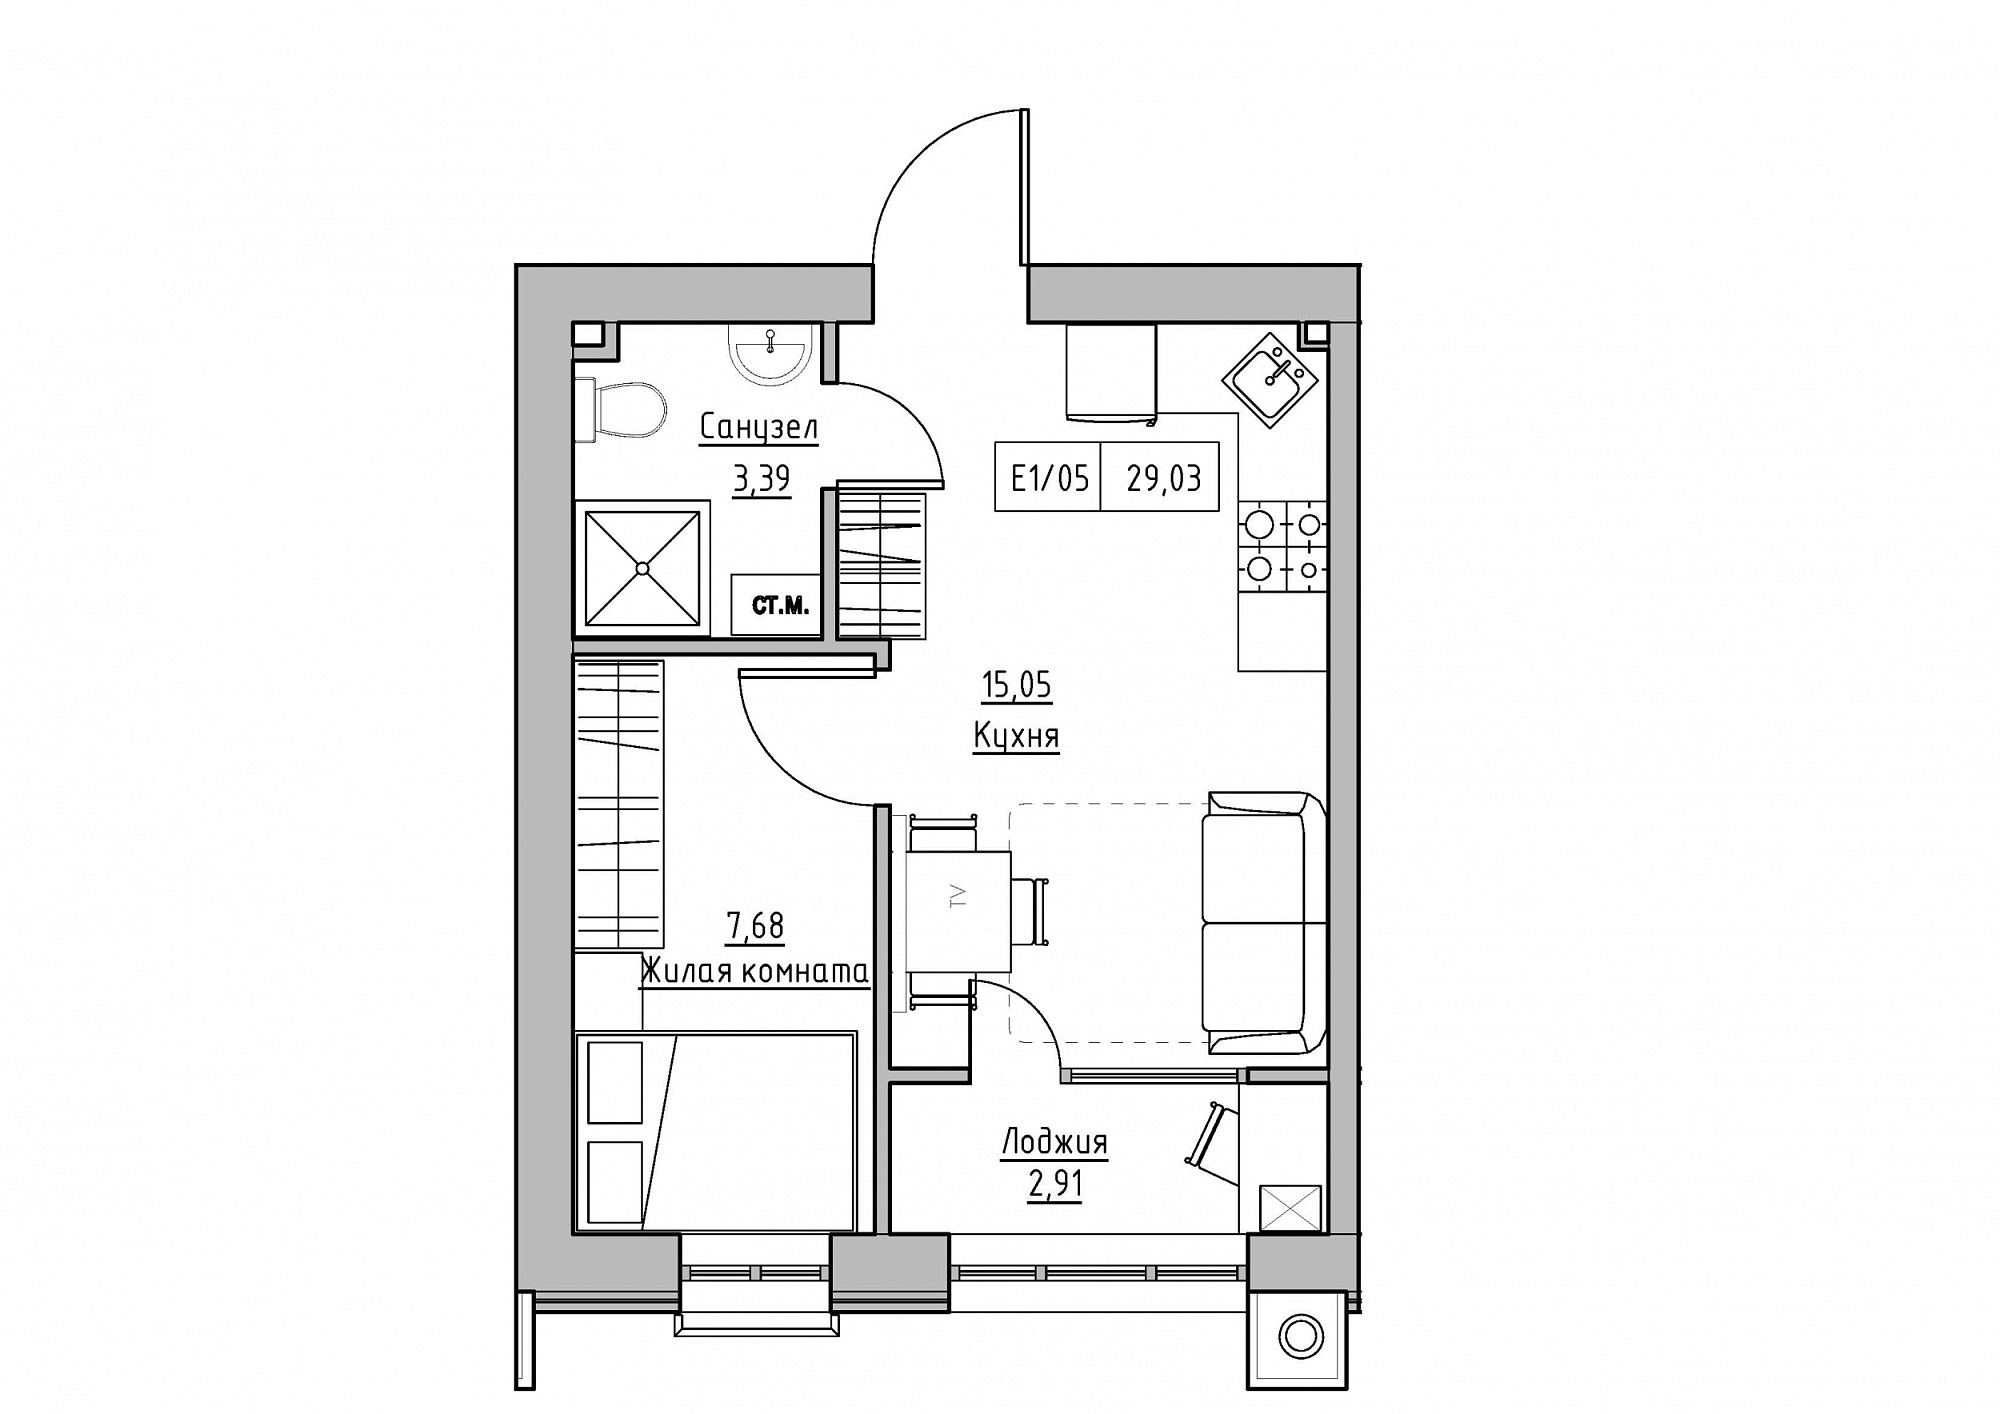 Планировка 1-к квартира площей 29.03м2, KS-012-03/0007.